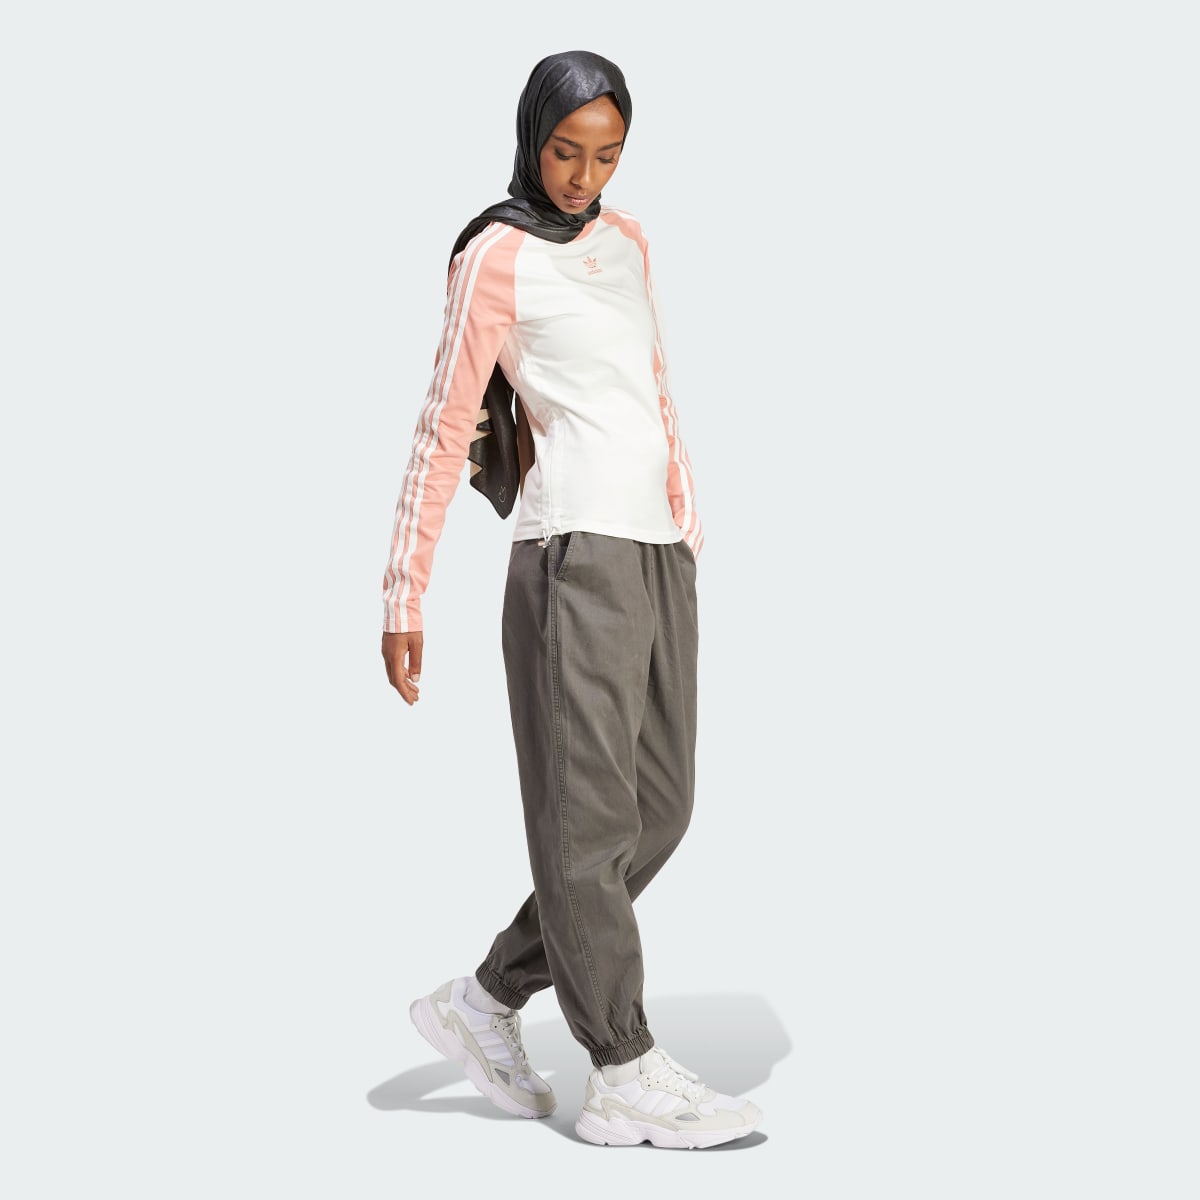 Adidas Slim Fit Long Sleeve Long-Sleeve Top. 4